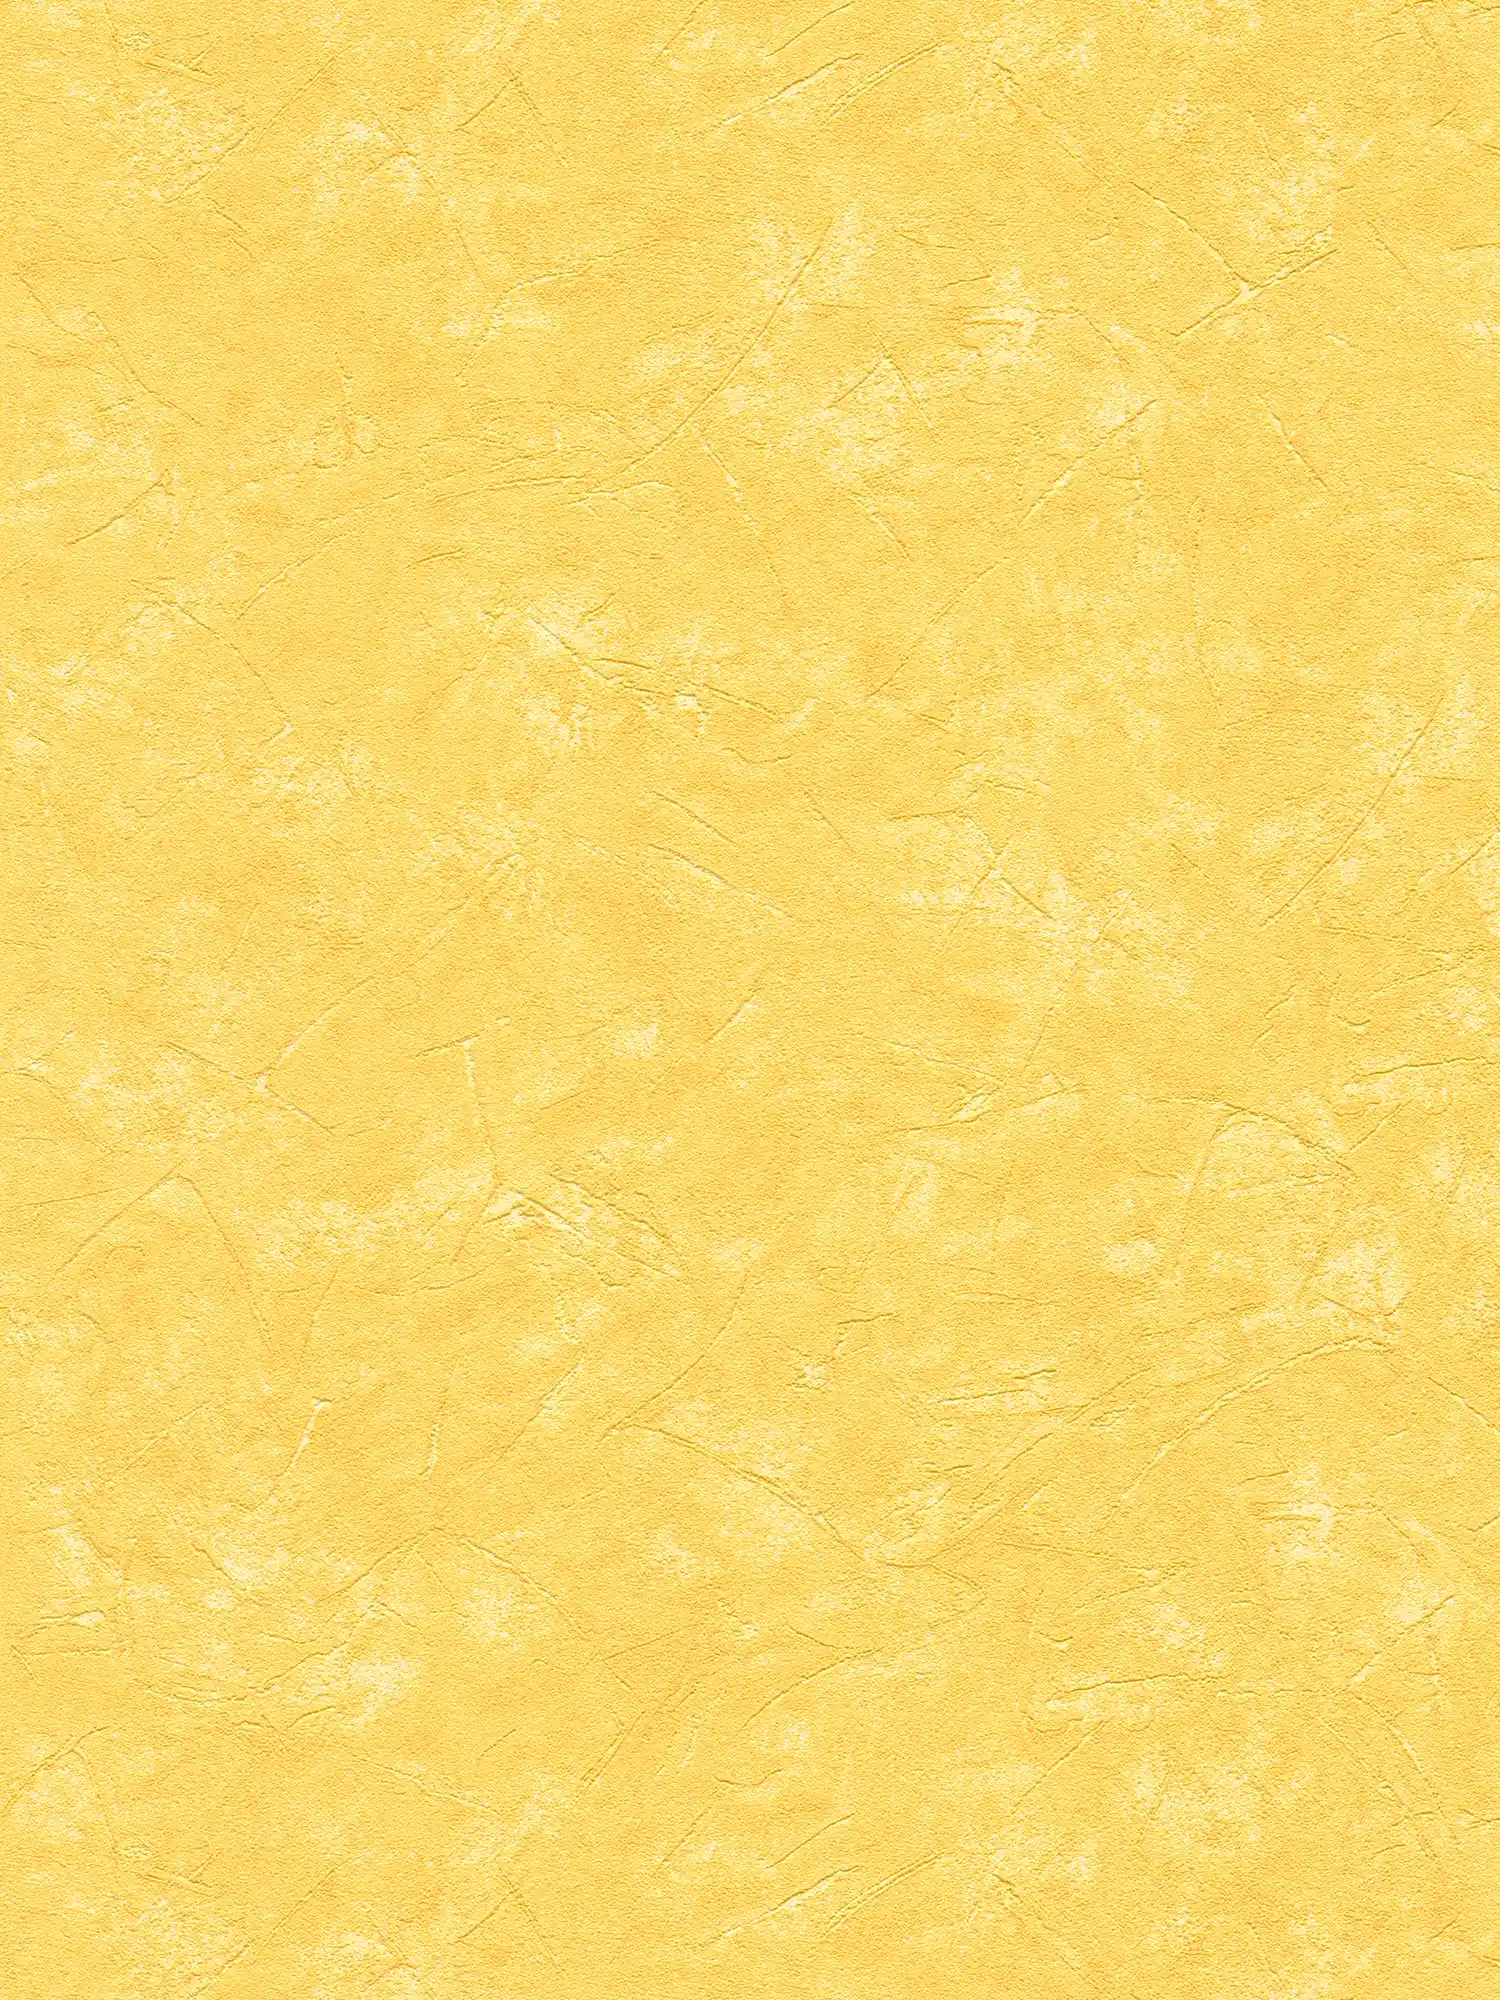 Gipsvezelbehang zon geel in mediterrane stijl
